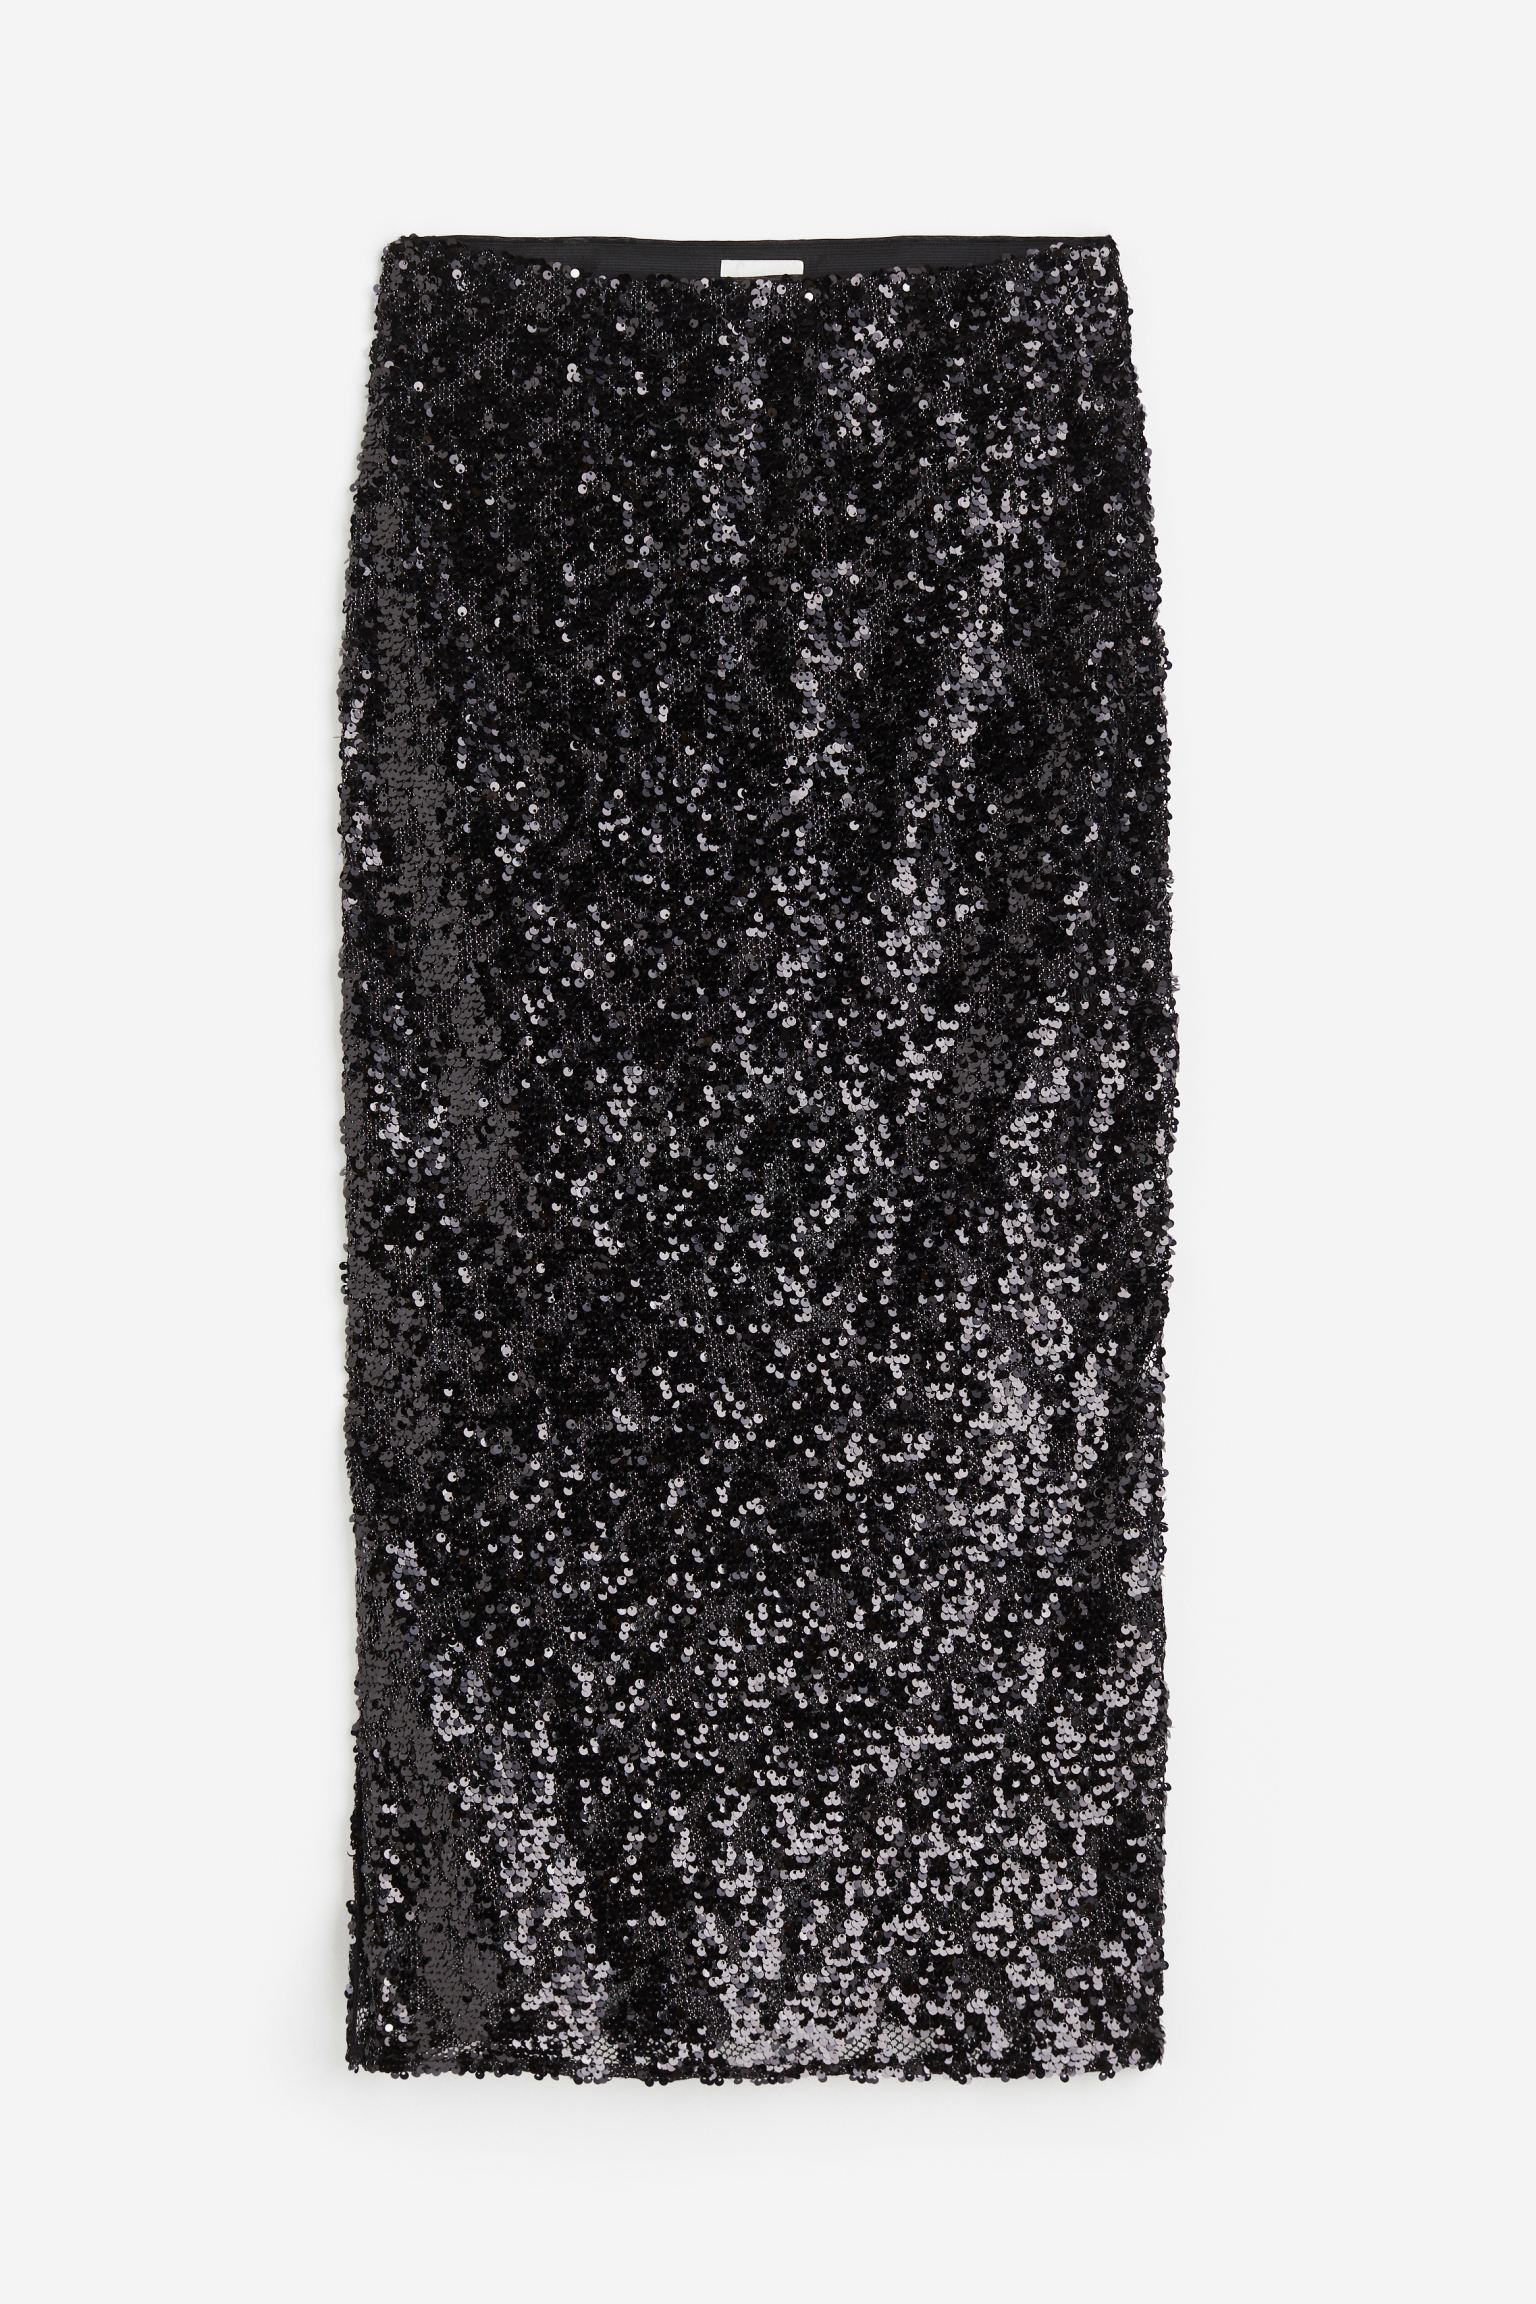 Юбка H&M Sequined, черный кожаная юбка облегающая бедра женская длинная юбка новинка весны 2022 модная облегающая юбка средней длины юбка с разрезом